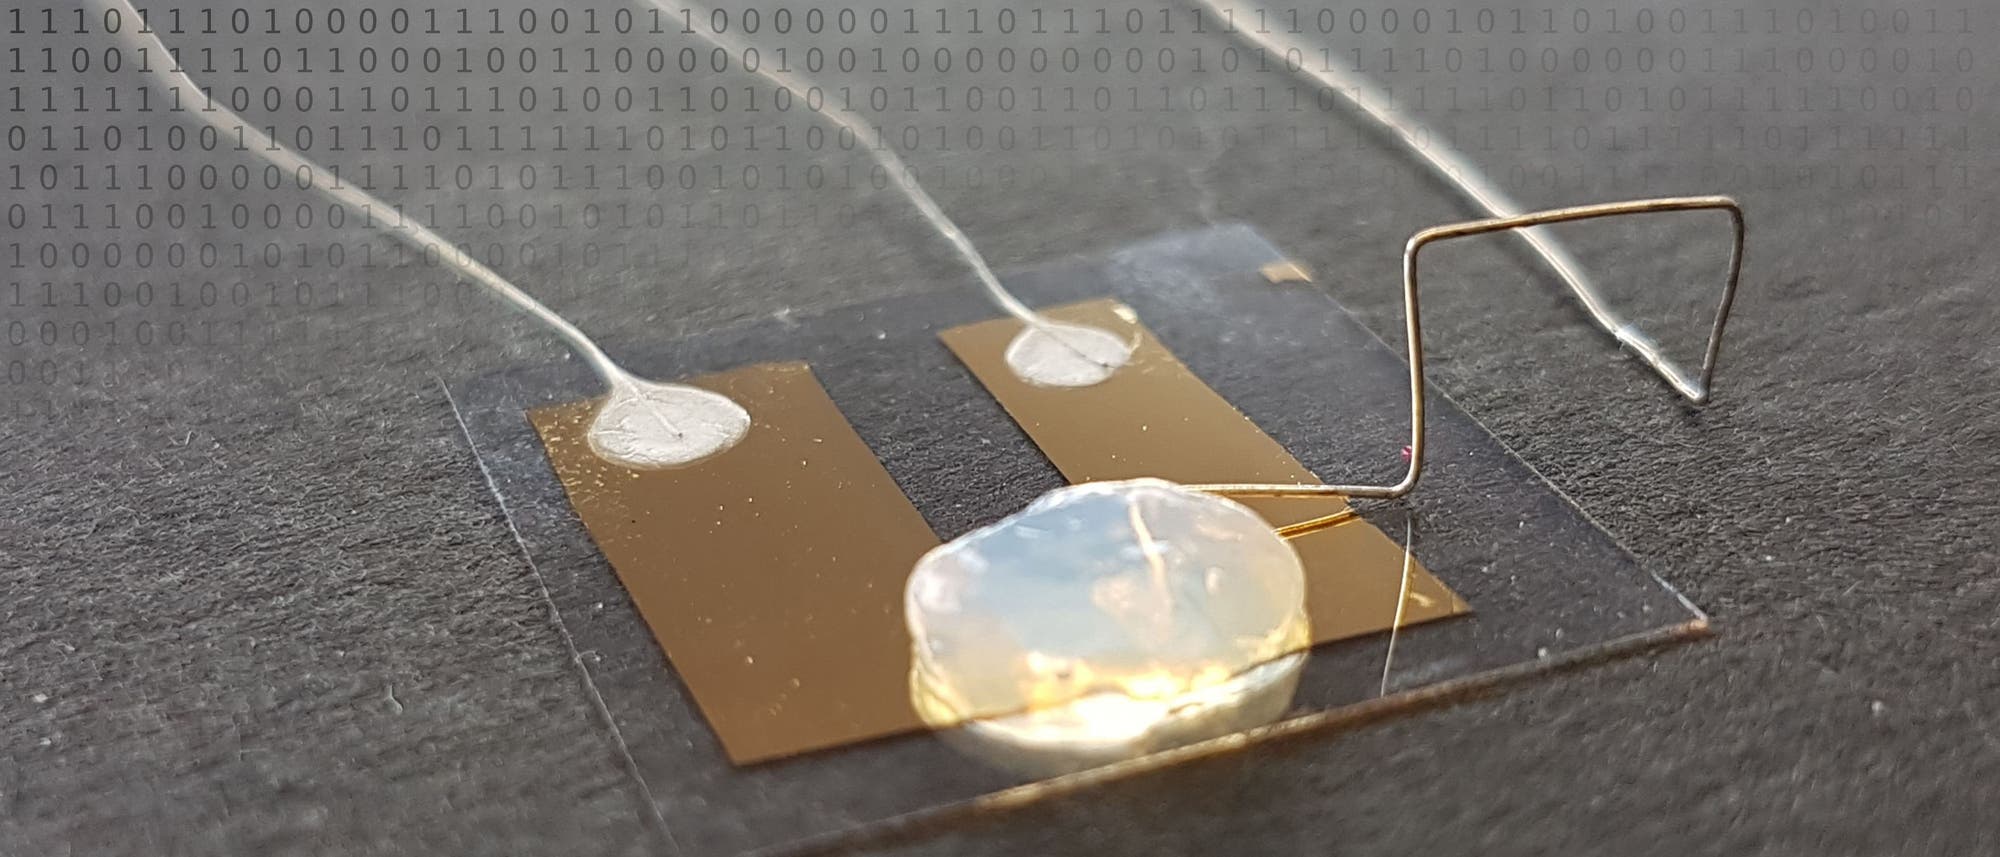 Einzelatom-Transistor im Labor